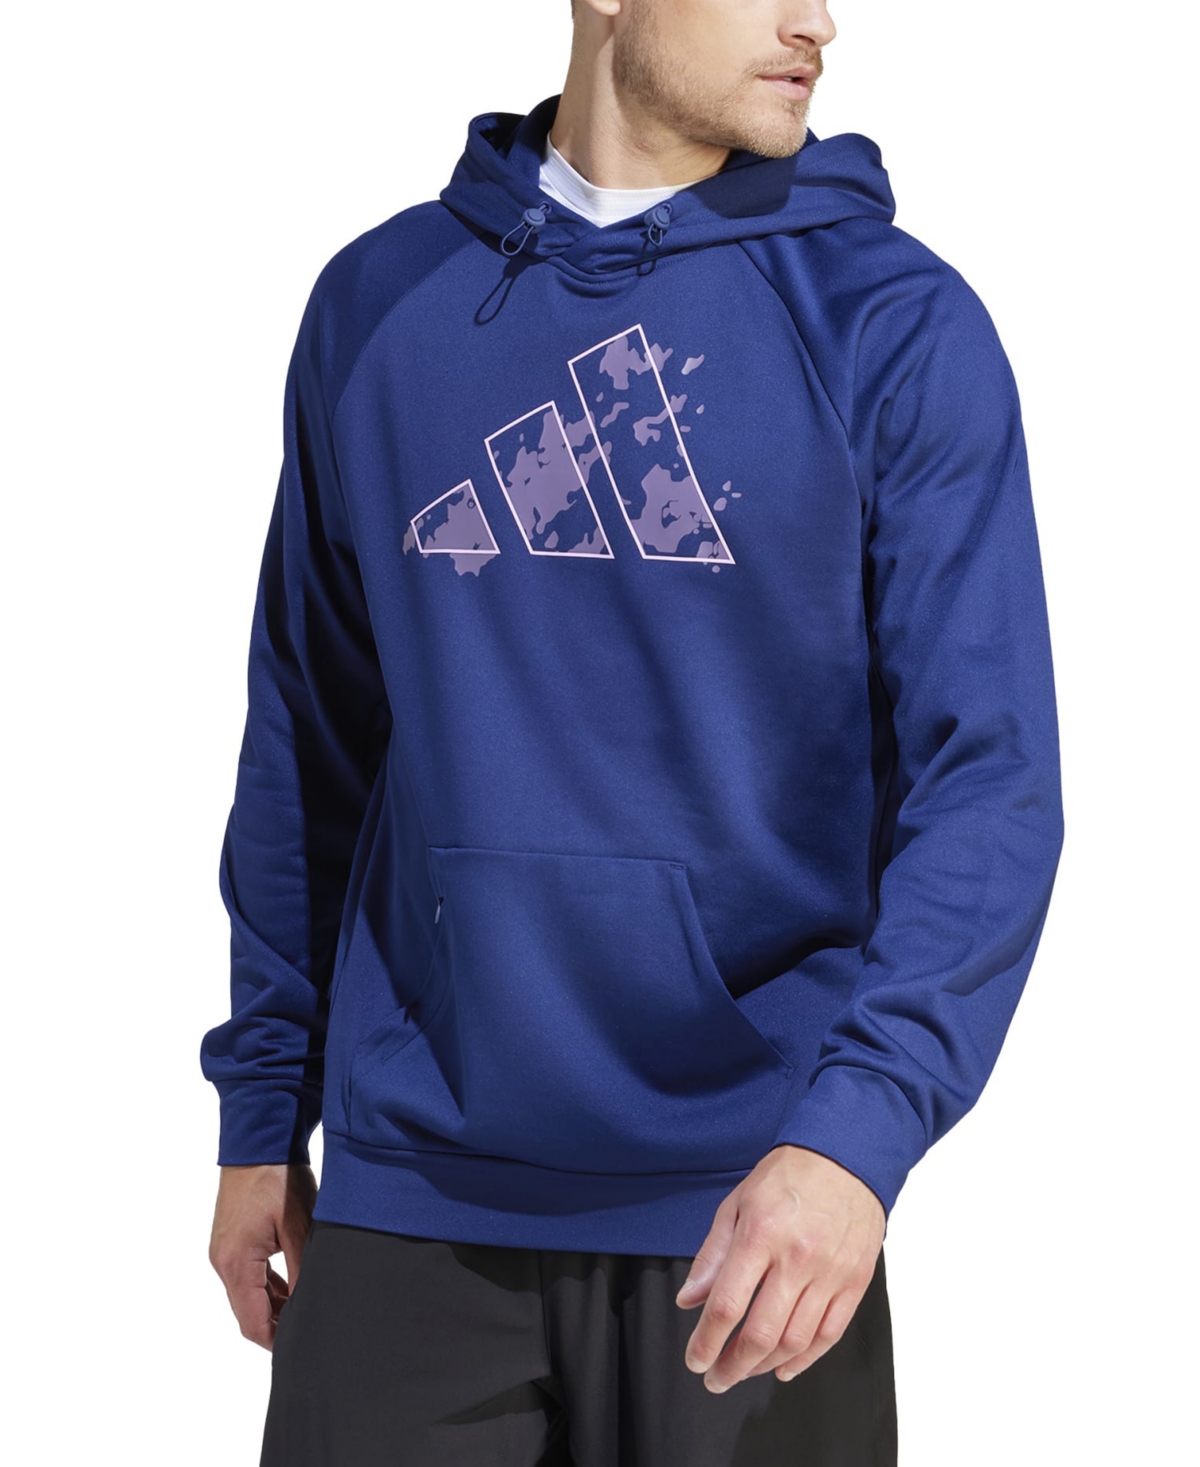 Adidas Originals Men's Game & Go Camo Big Logo Training Fleece Hoodie In Drk Blue,bliss